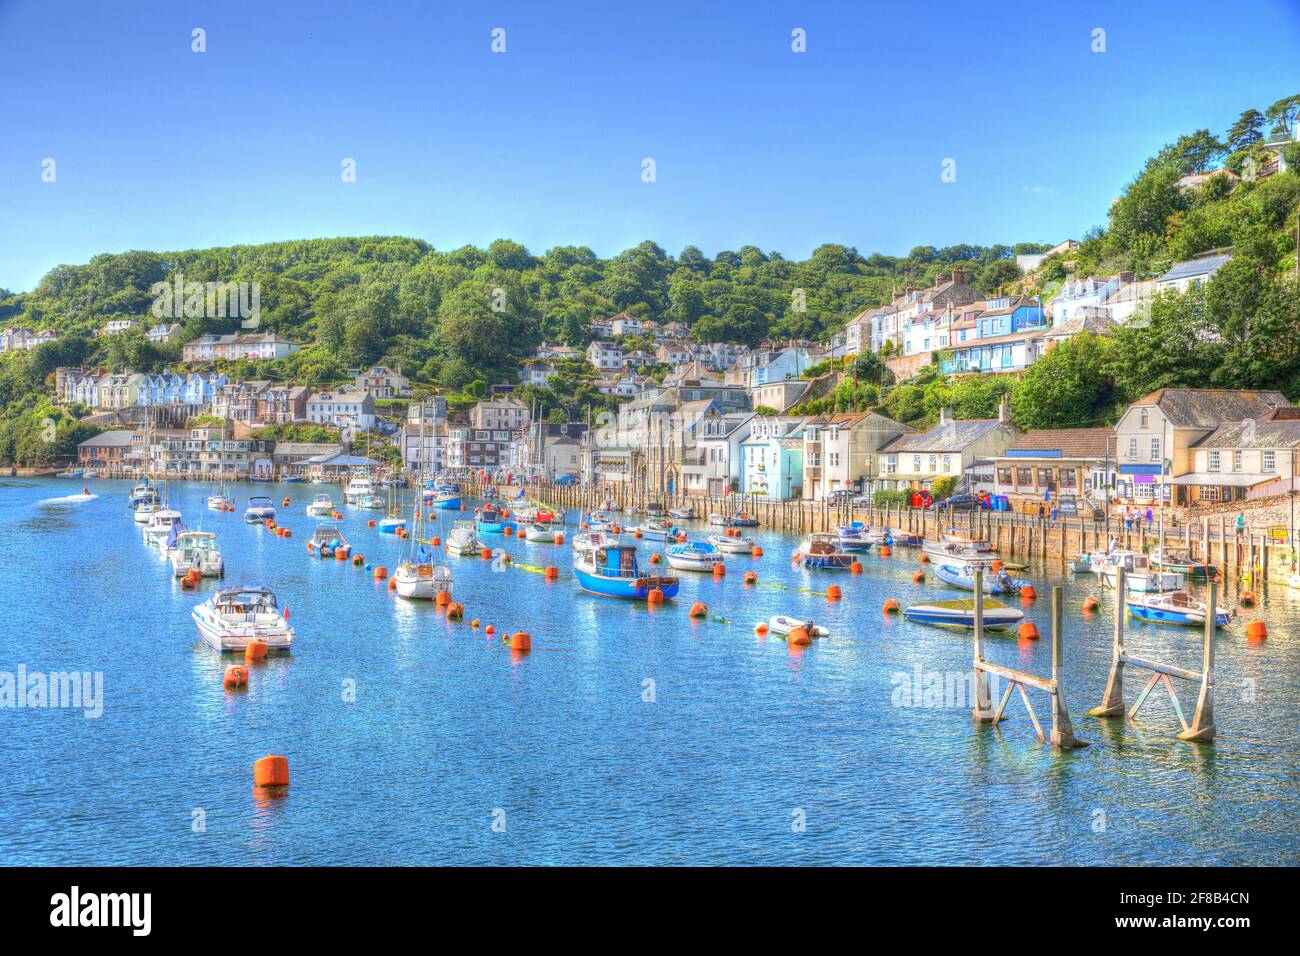 LOOE, Cornwall England UK Looe ein sehr beliebtes Fischereihafen ein  Ferienort voll von Hotels, Sehenswürdigkeiten und Restaurants  Stockfotografie - Alamy